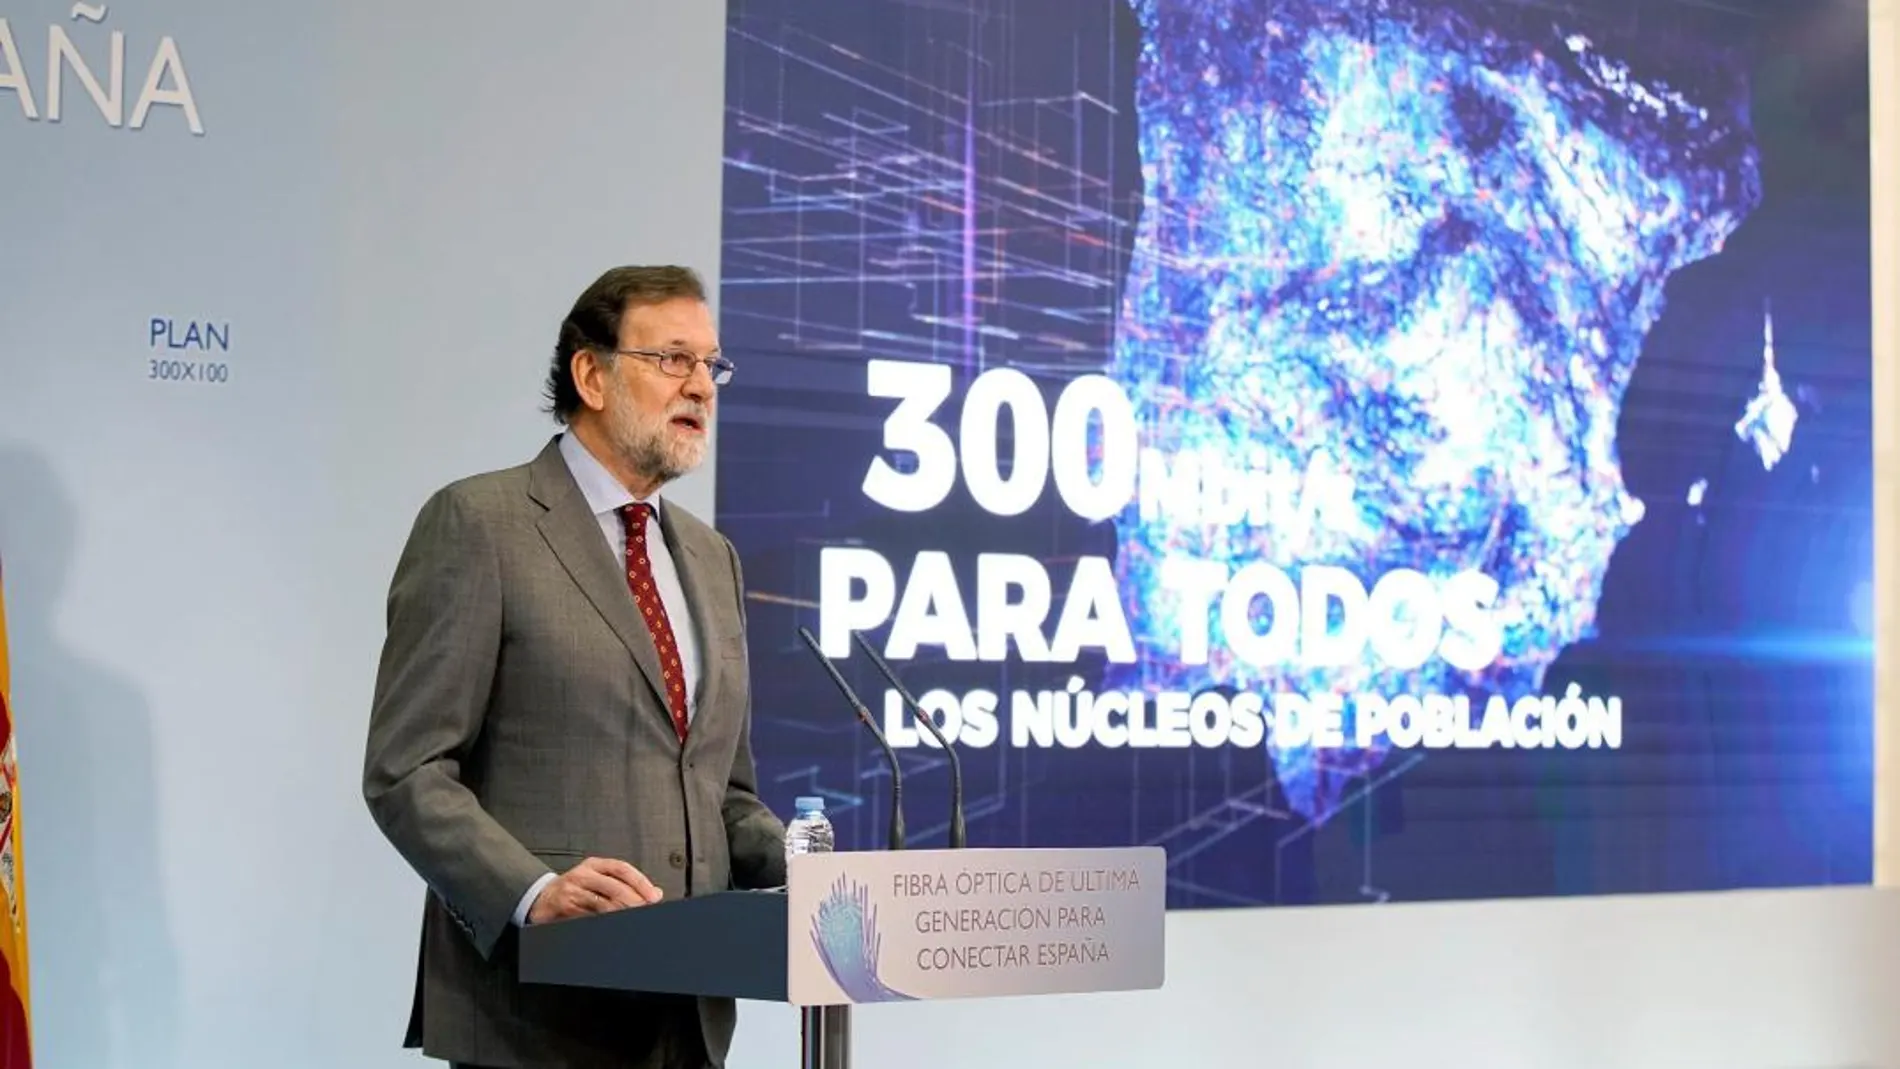 Mariano Rajoy presenta el Plan 300x100 para extender la banda ancha a todos los municipios españoles en cuatro años